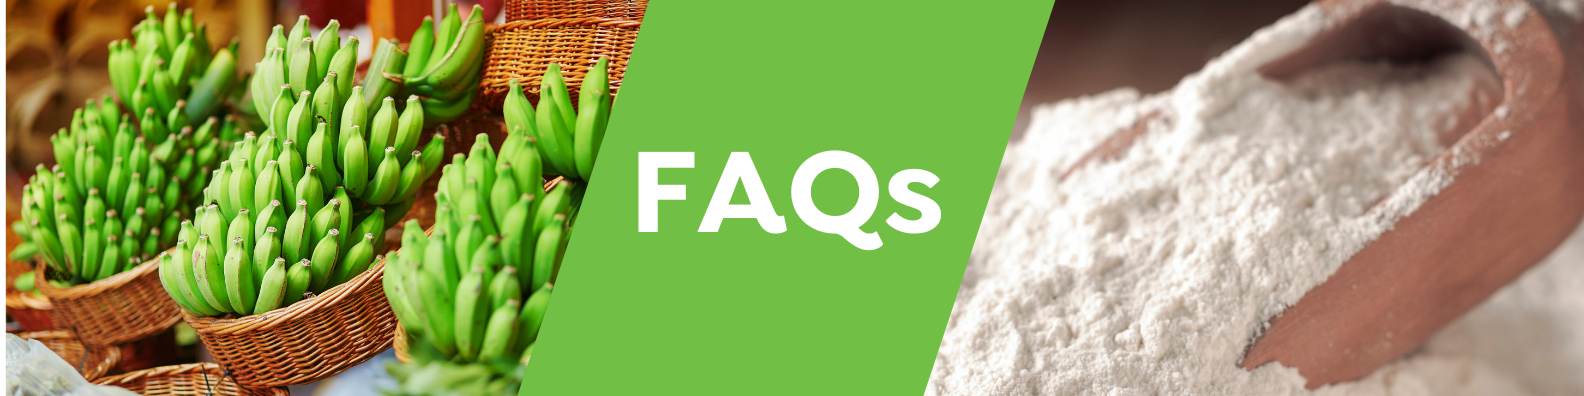 Green Banana Flour FAQs